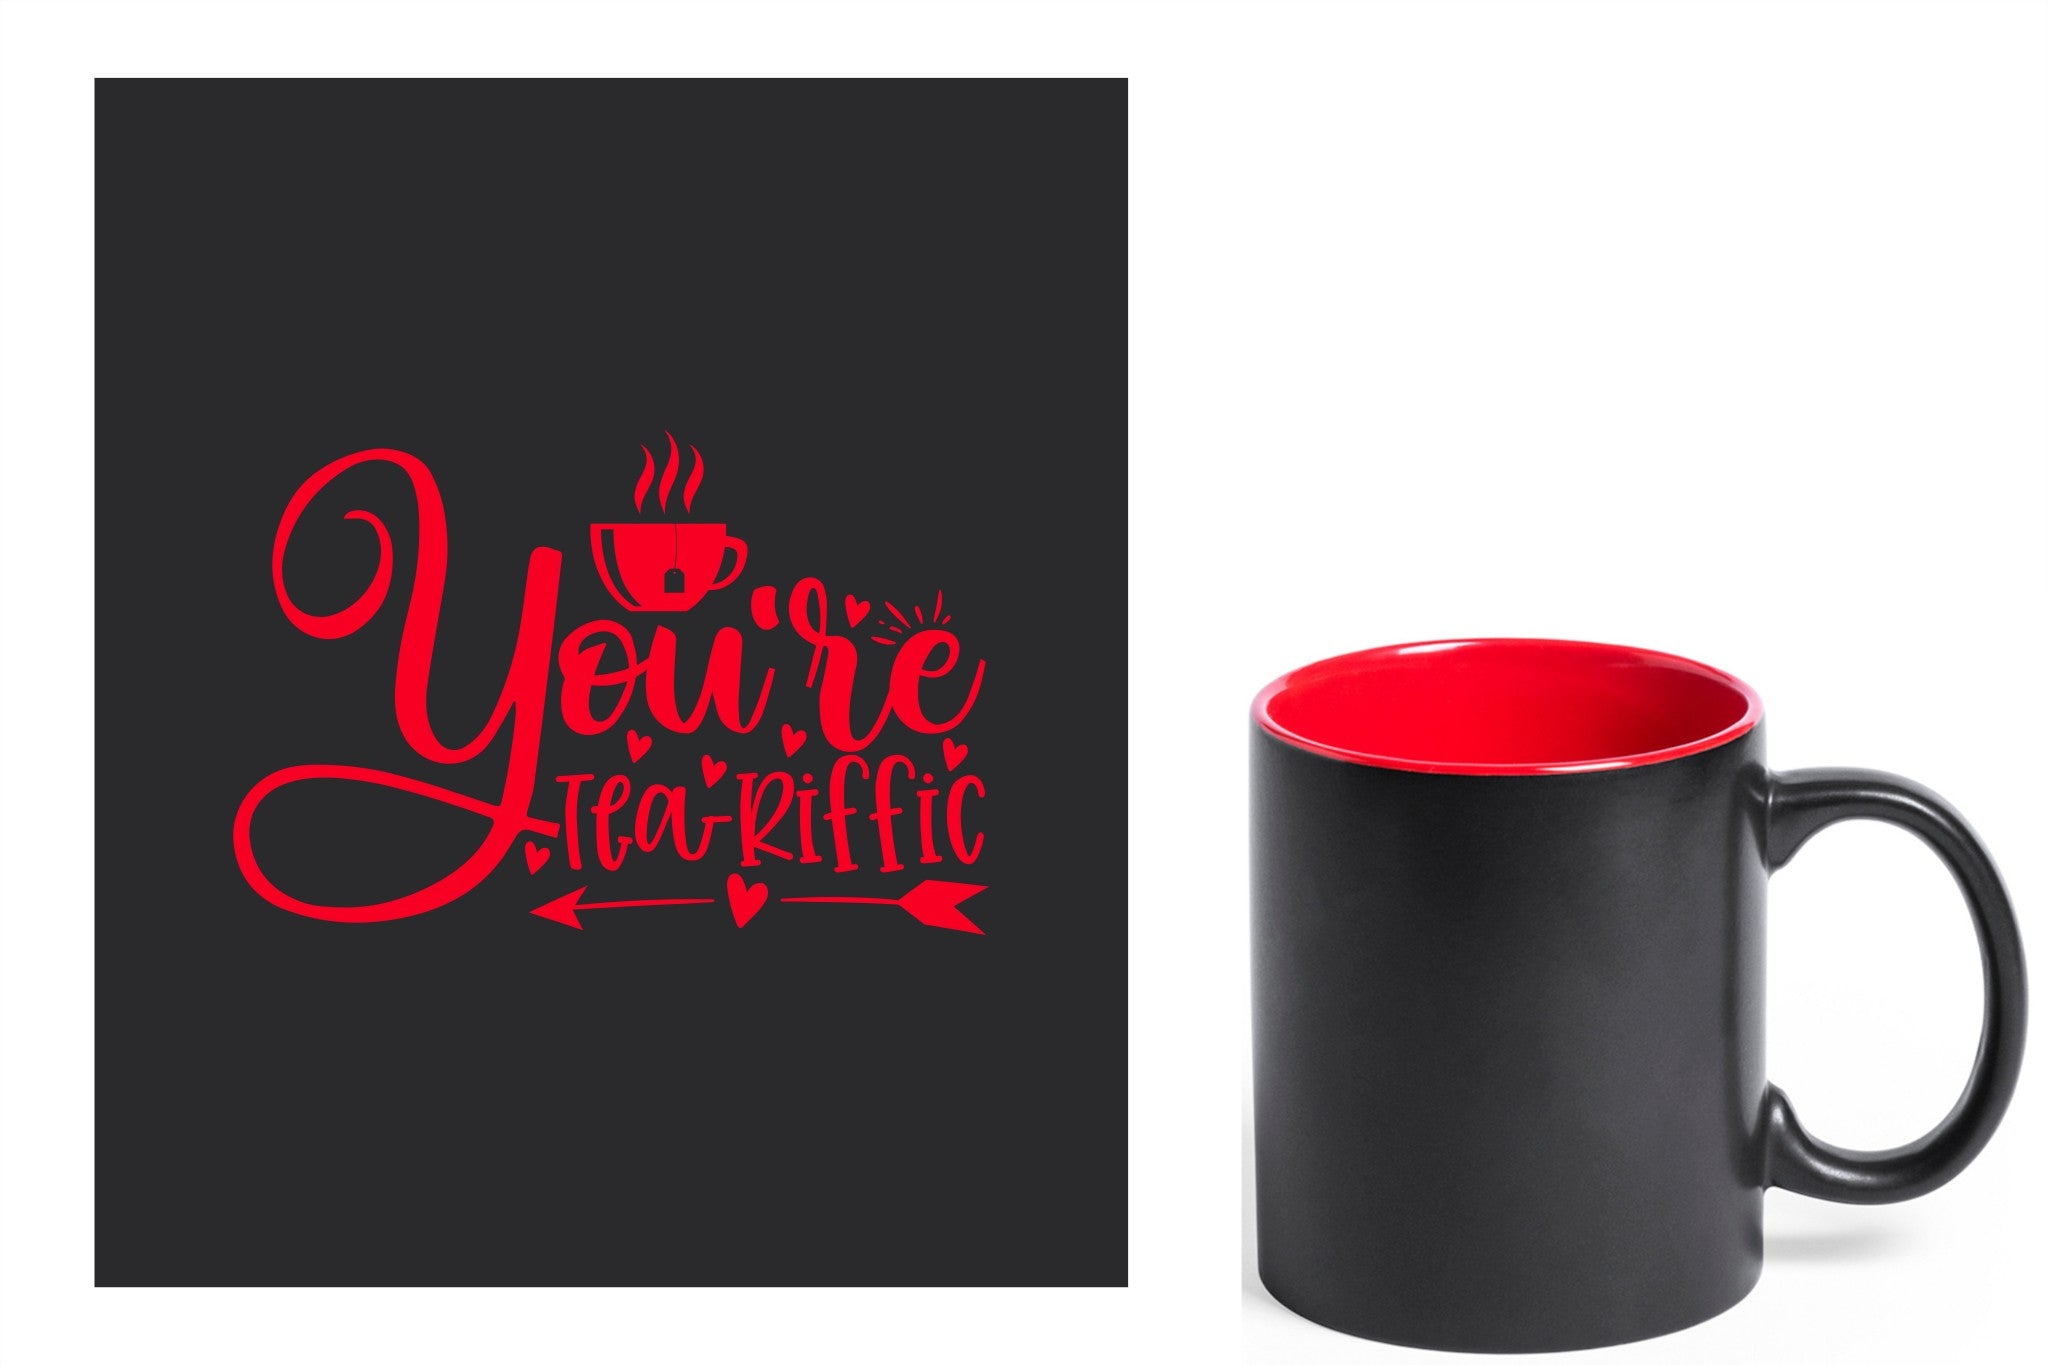 zwarte keramische mok met rode gravure  'You're teariffic'.